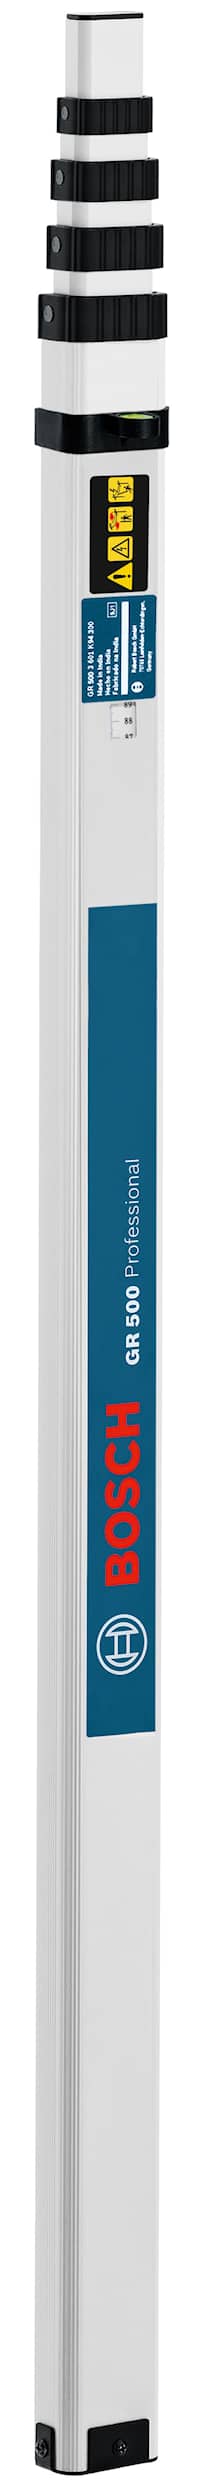 Bosch Målestav GR 500 Professional med tilbehørssett